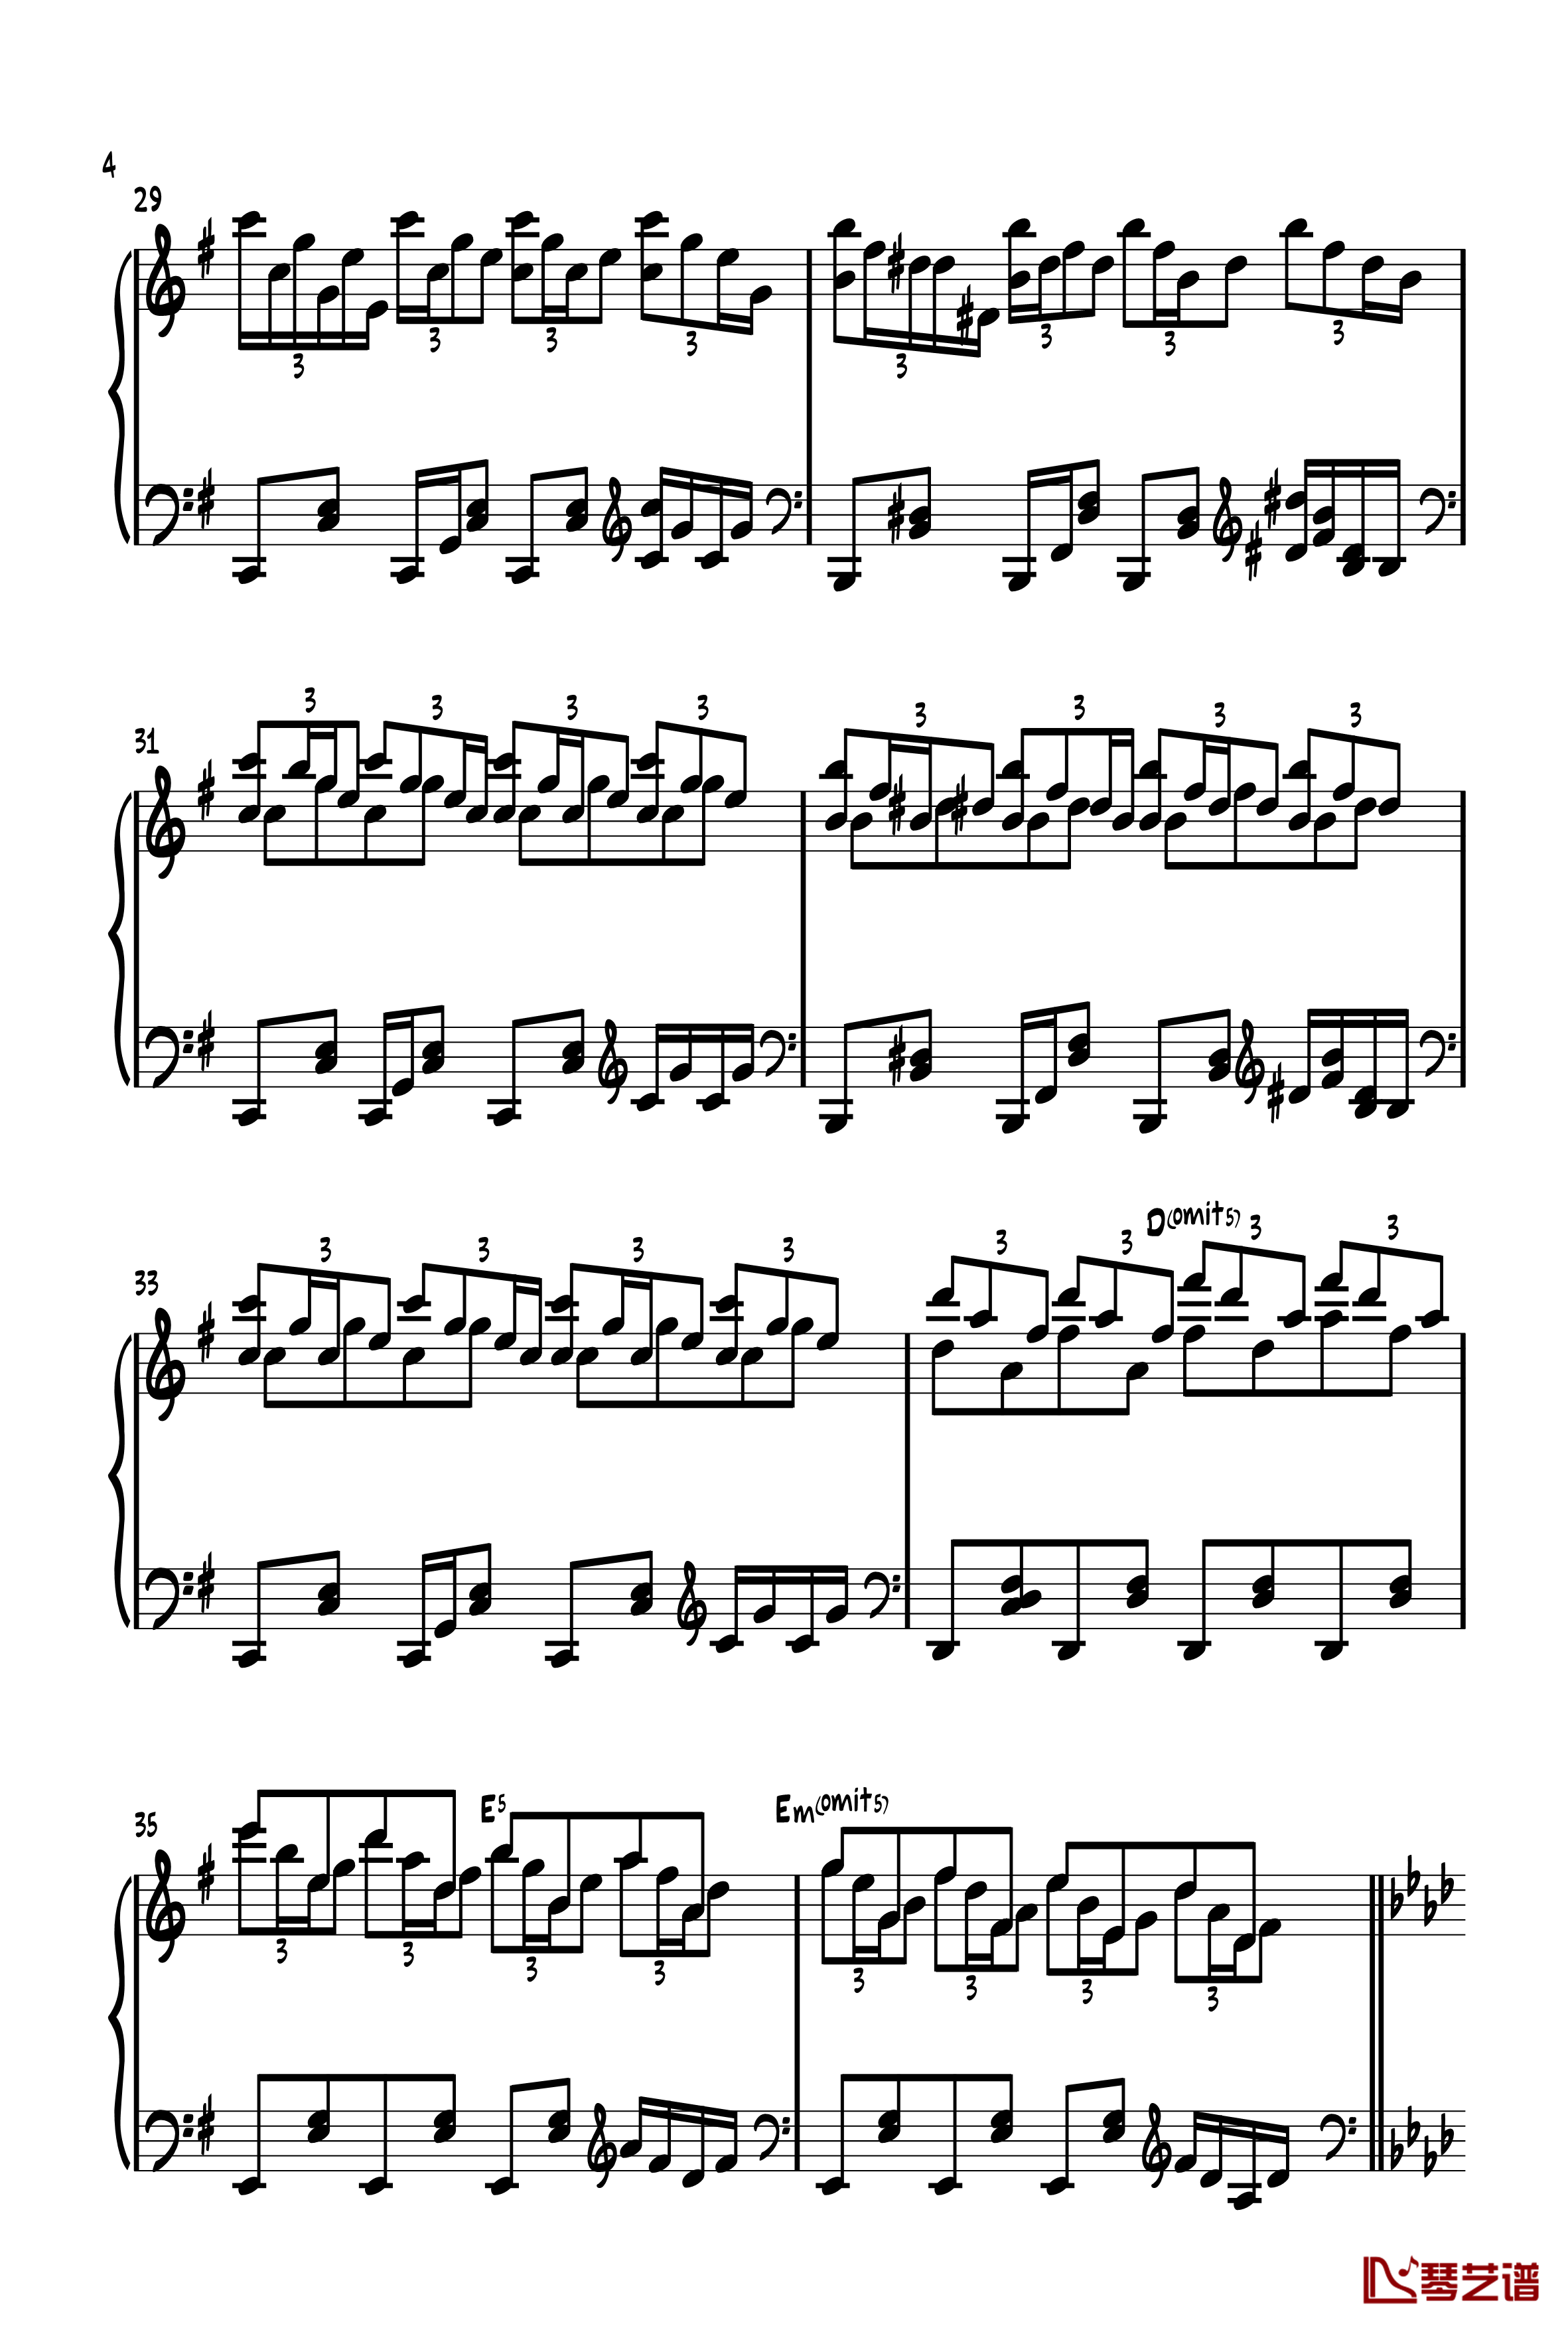 旅人1970钢琴谱-ヴォヤージュ１９７０-zun4